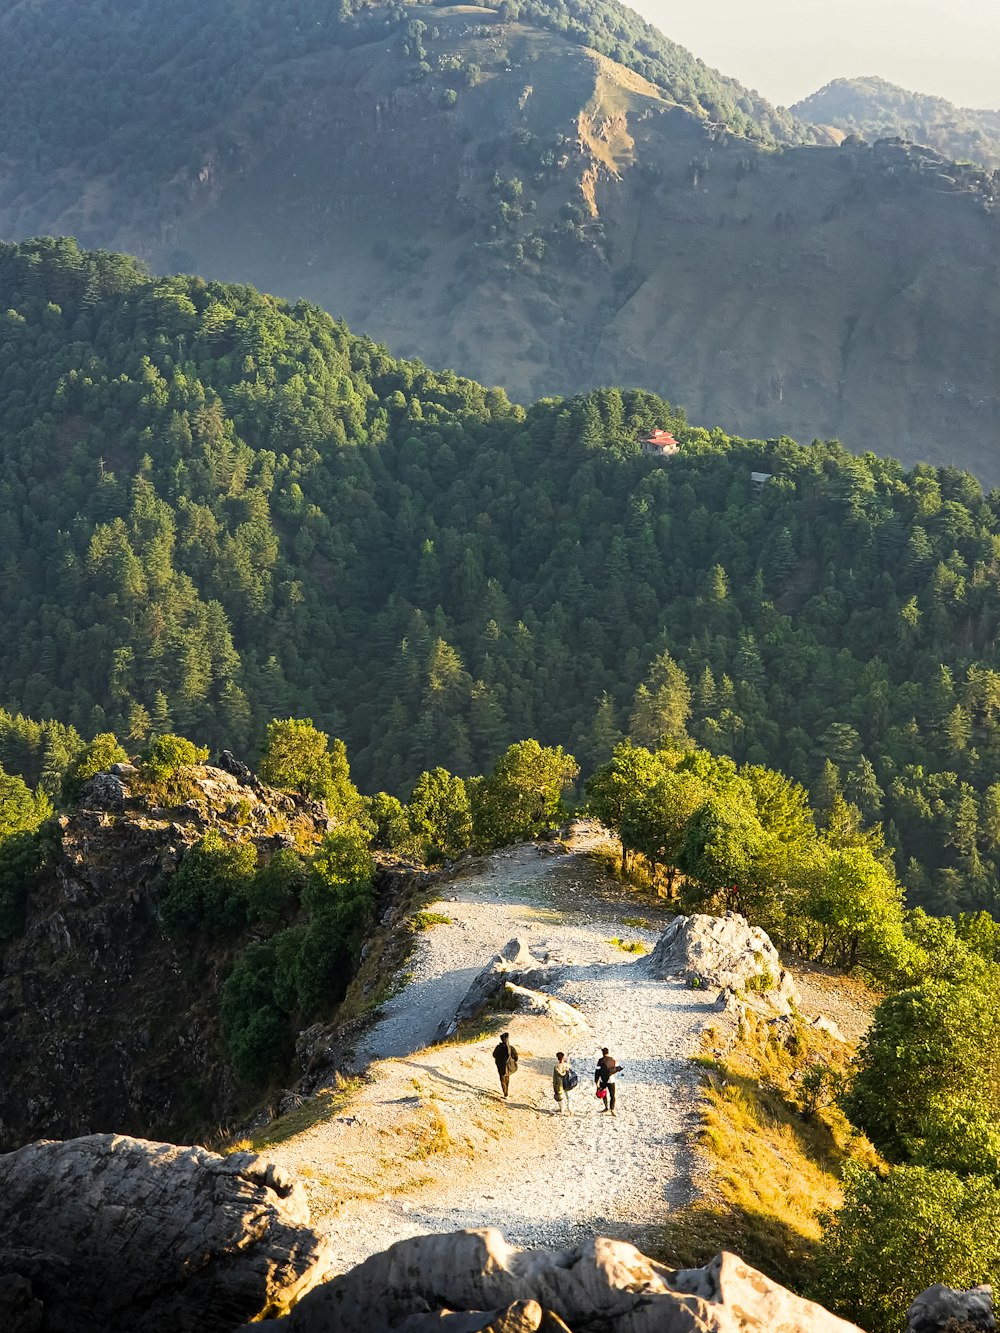 people walking on a rocky path in a mountainous region